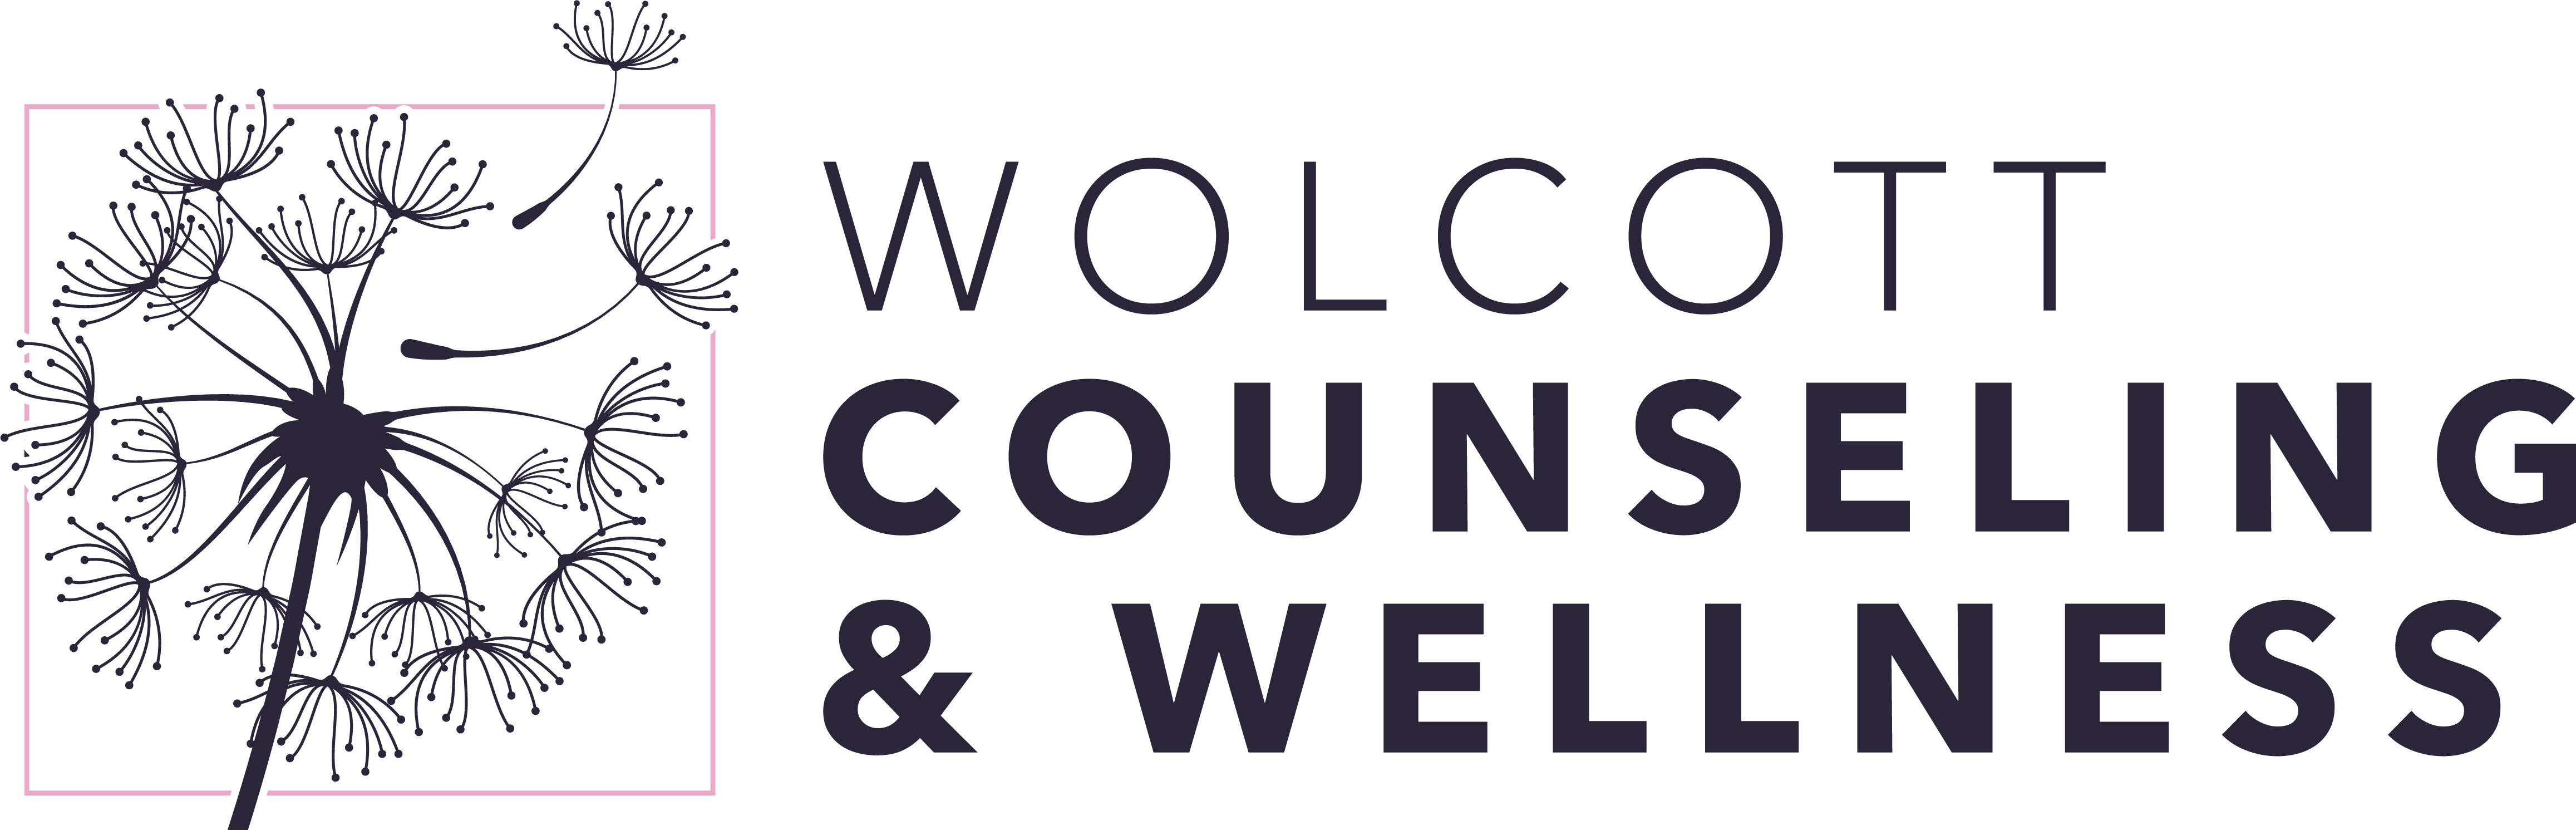 Wolcott Counseling & Wellness